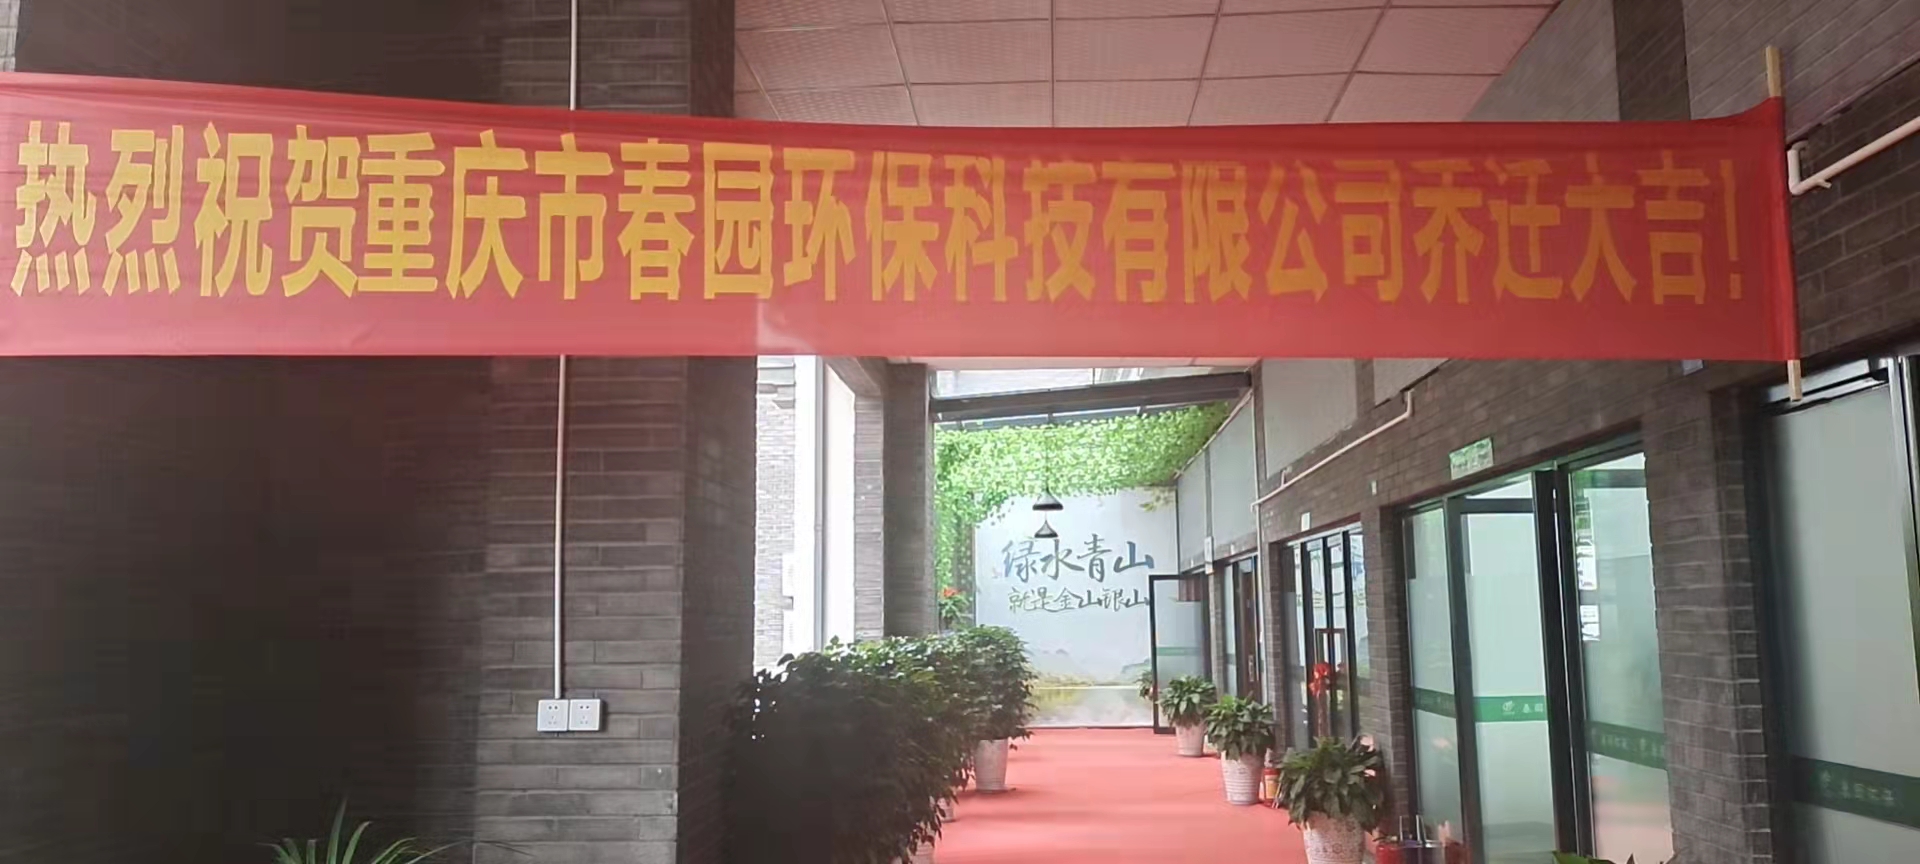 重庆市春园环保科技有限公司2021年8月20日公司乔迁新址